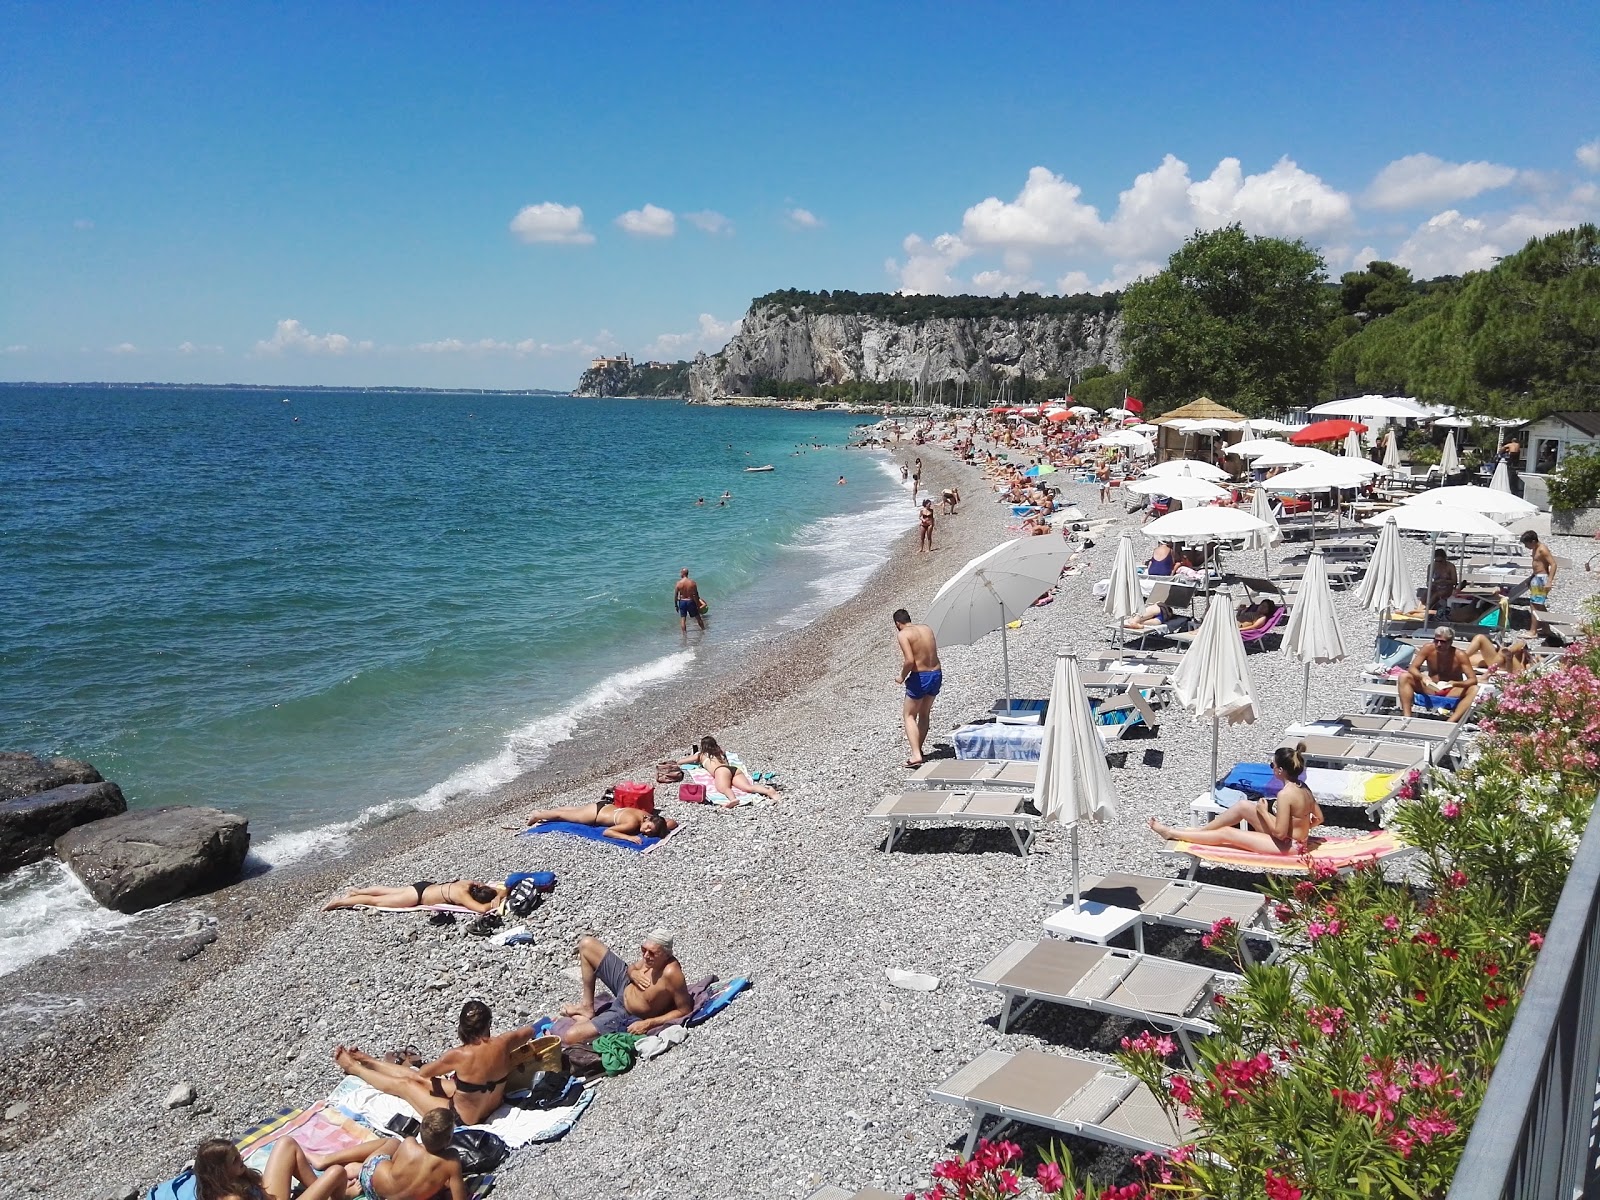 Sistiana Plajı'in fotoğrafı gri çakıl taşı yüzey ile